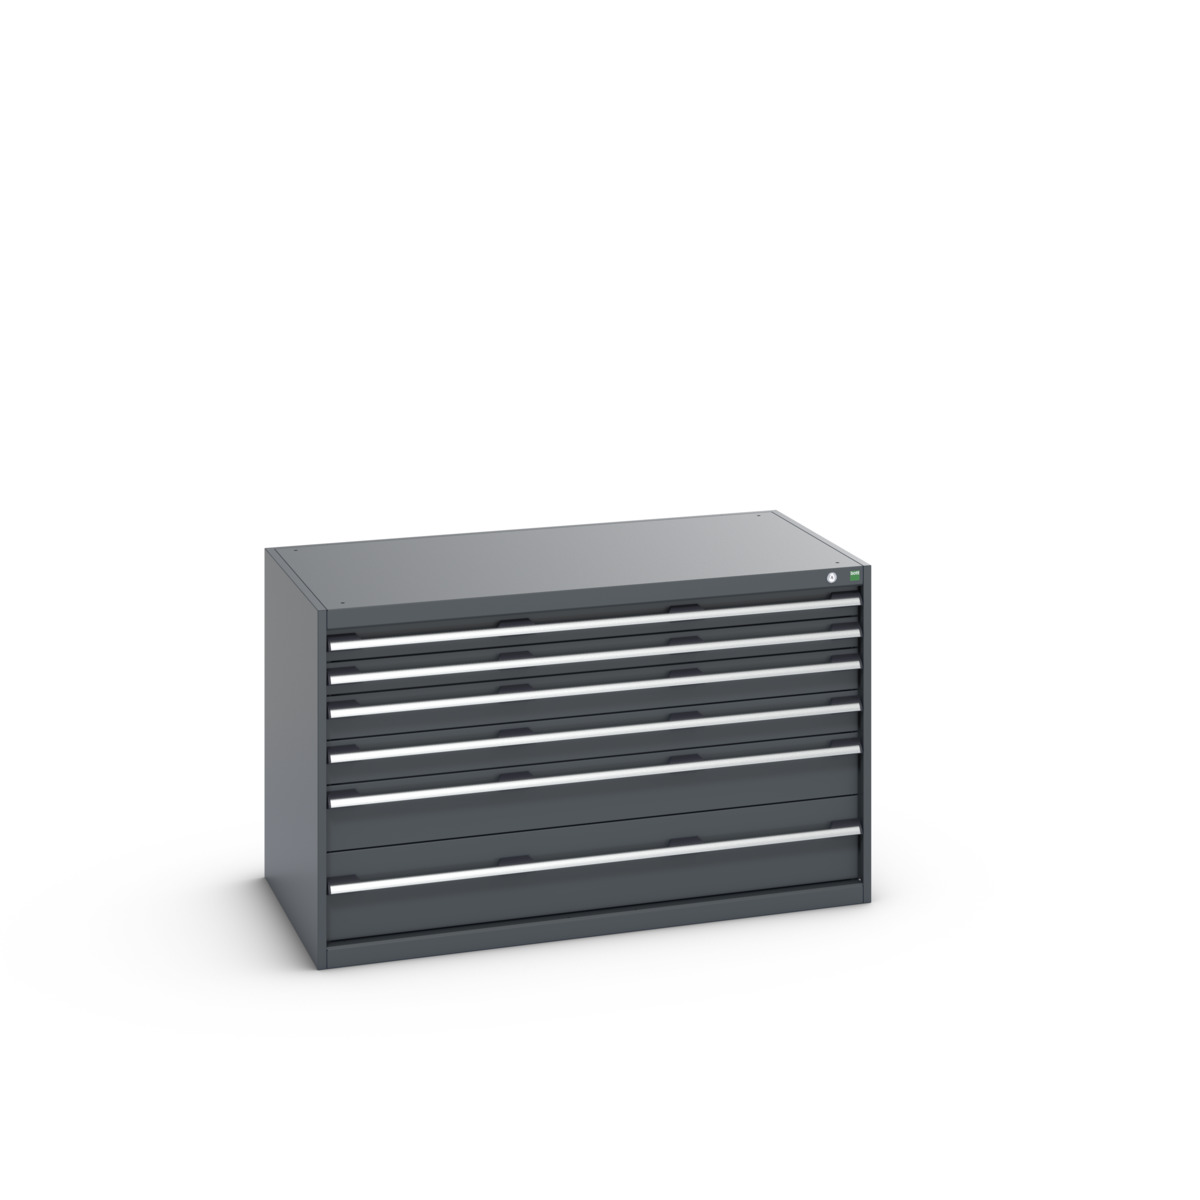 40030071.77V - cubio drawer cabinet